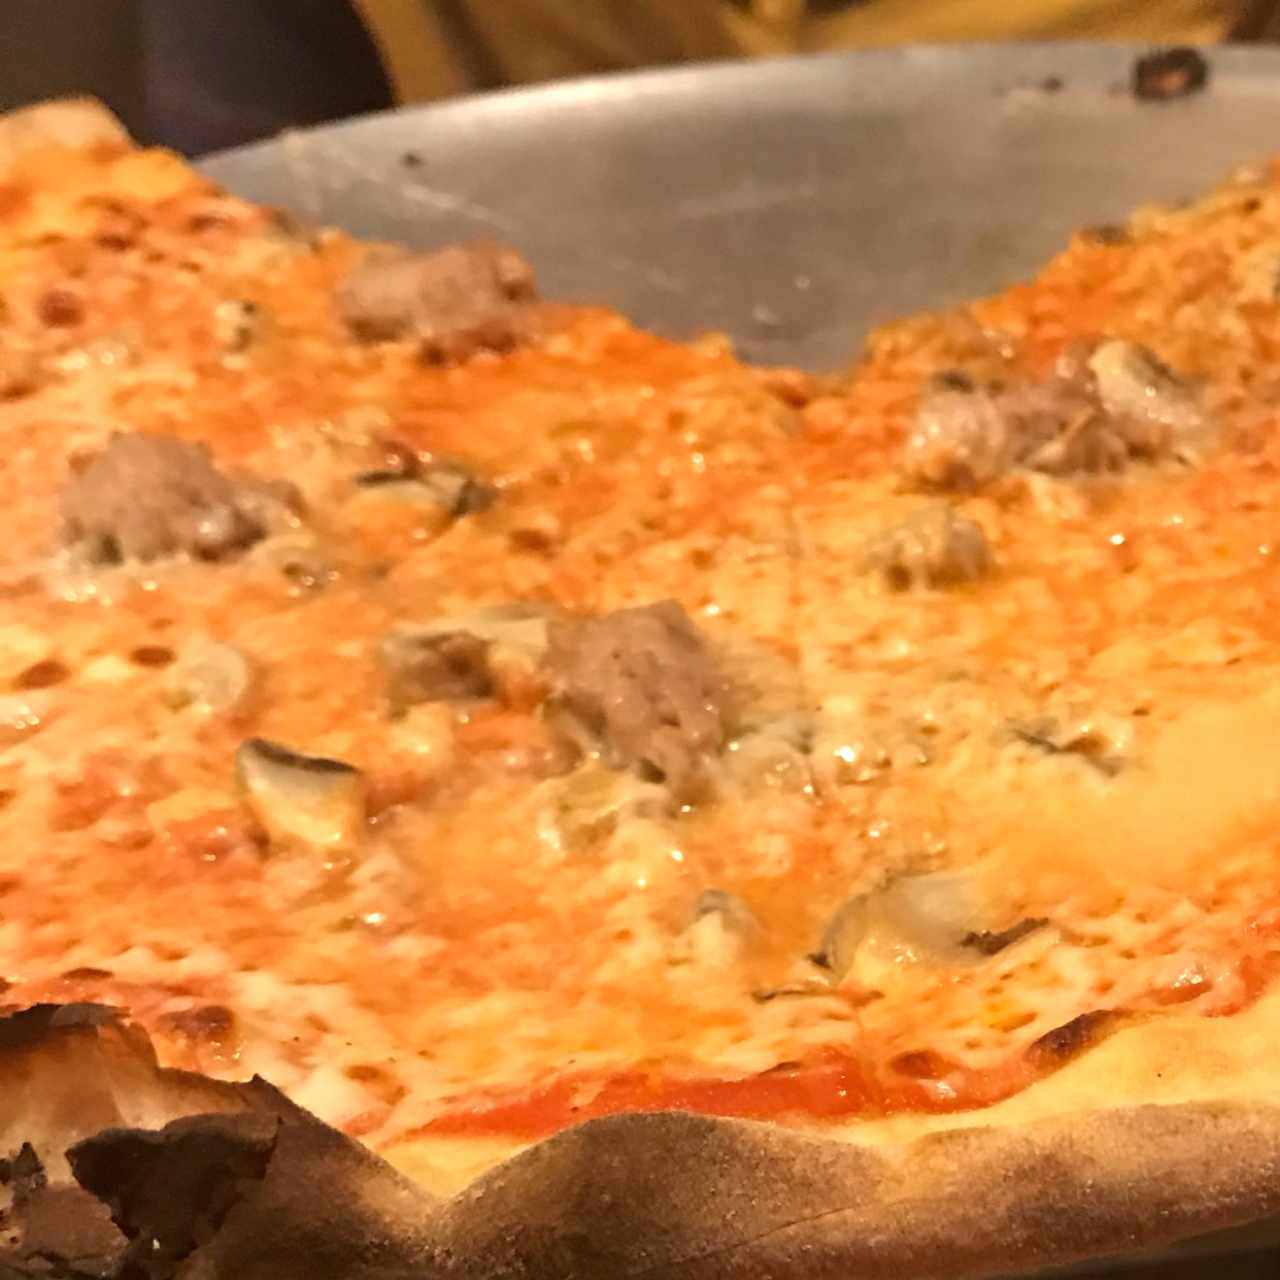 Pizza Milano